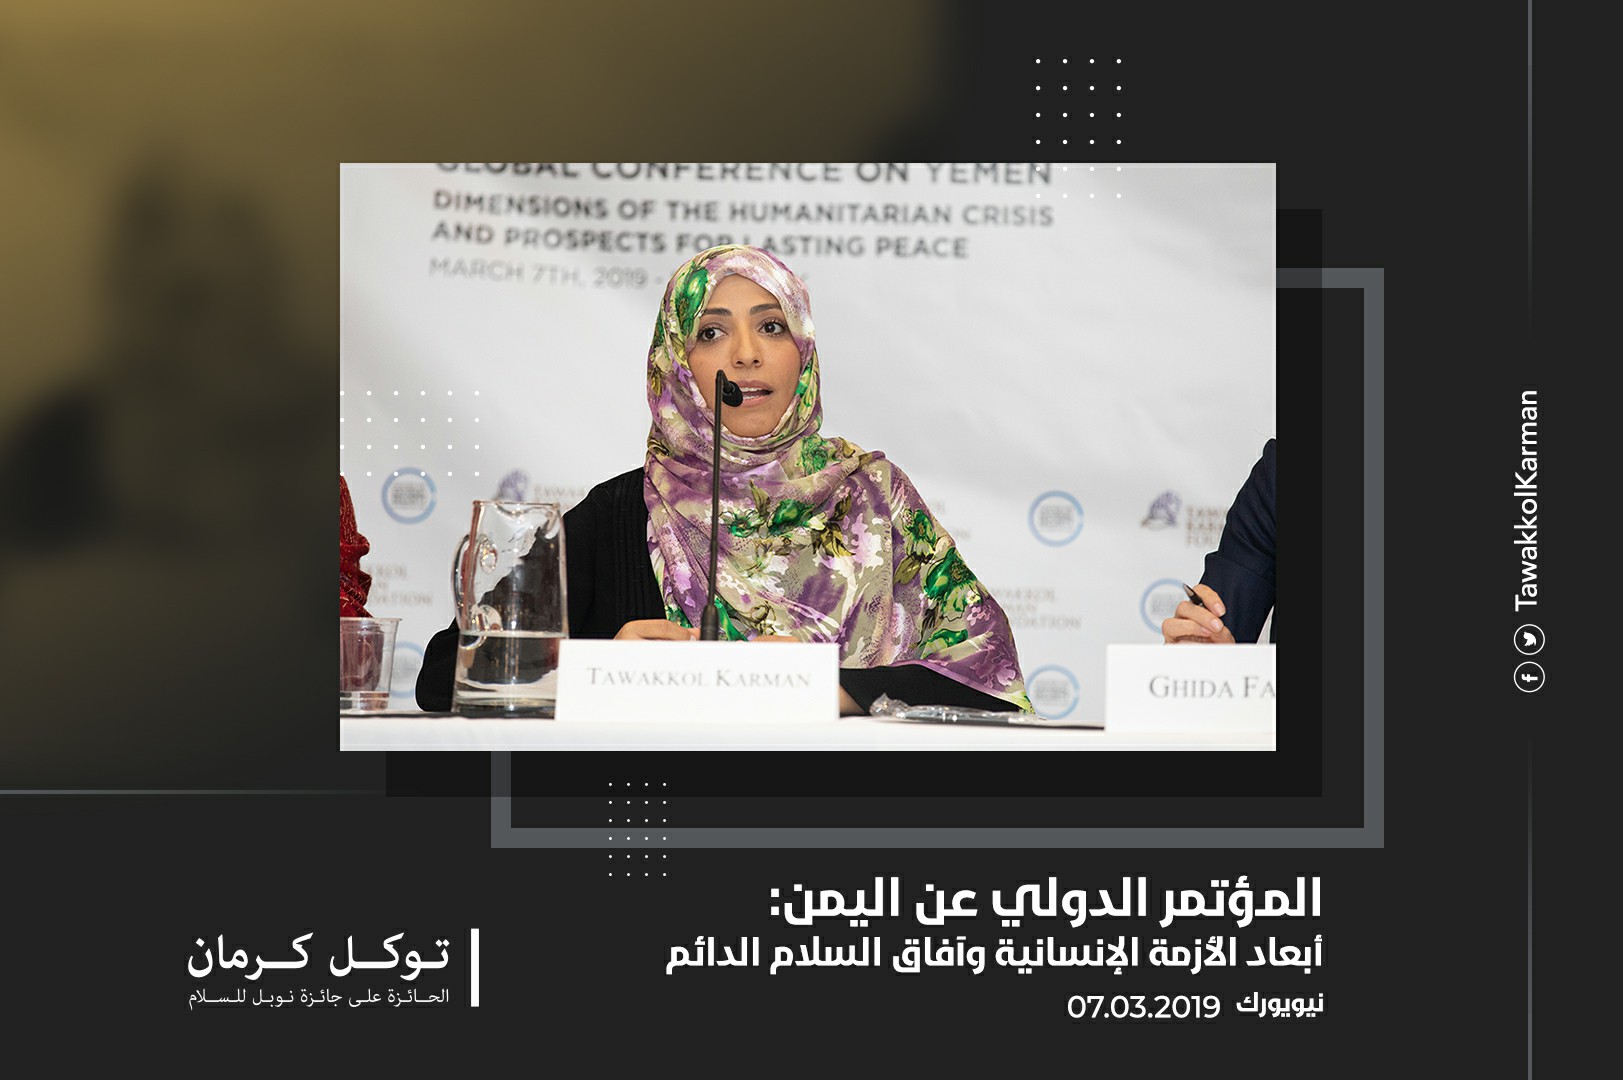 الكلمة الإفتتاحية لتوكل كرمان | المؤتمر العالمي عن اليمن: أبعاد الأزمة الإنسانية وآفاق السلام الدائم